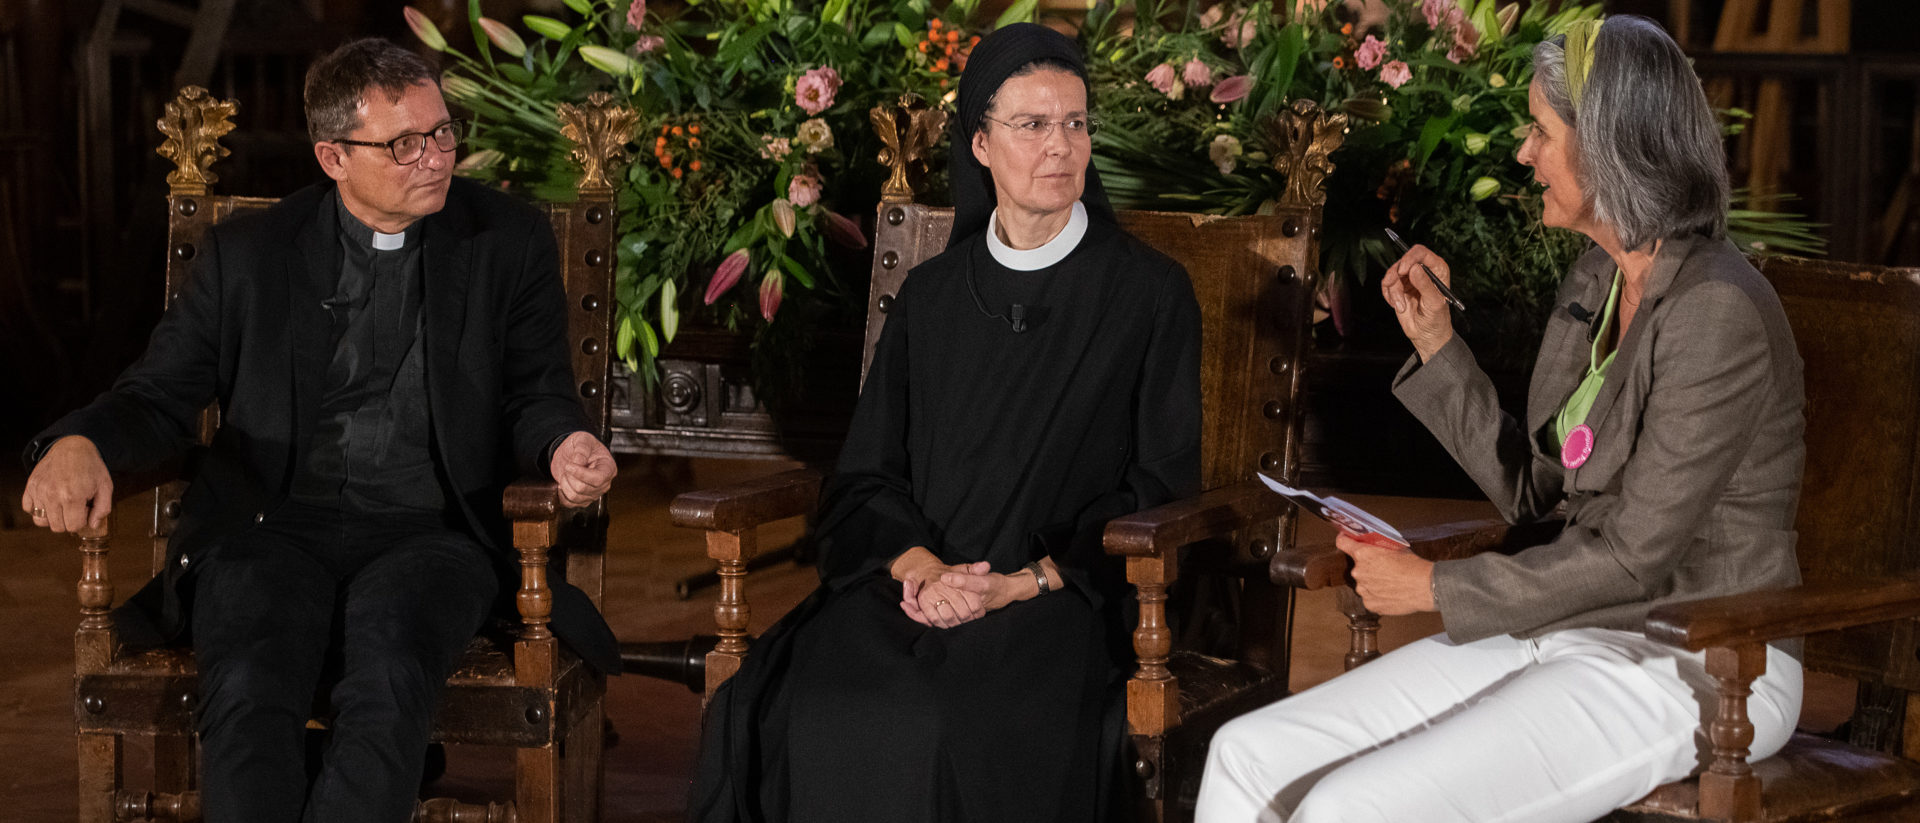 Bischof Felix Gmür, Priorin Irene Gassmann und die Theologin Regula Grünenfelder am Podium von "Voices of faith" in Rom, 2019.